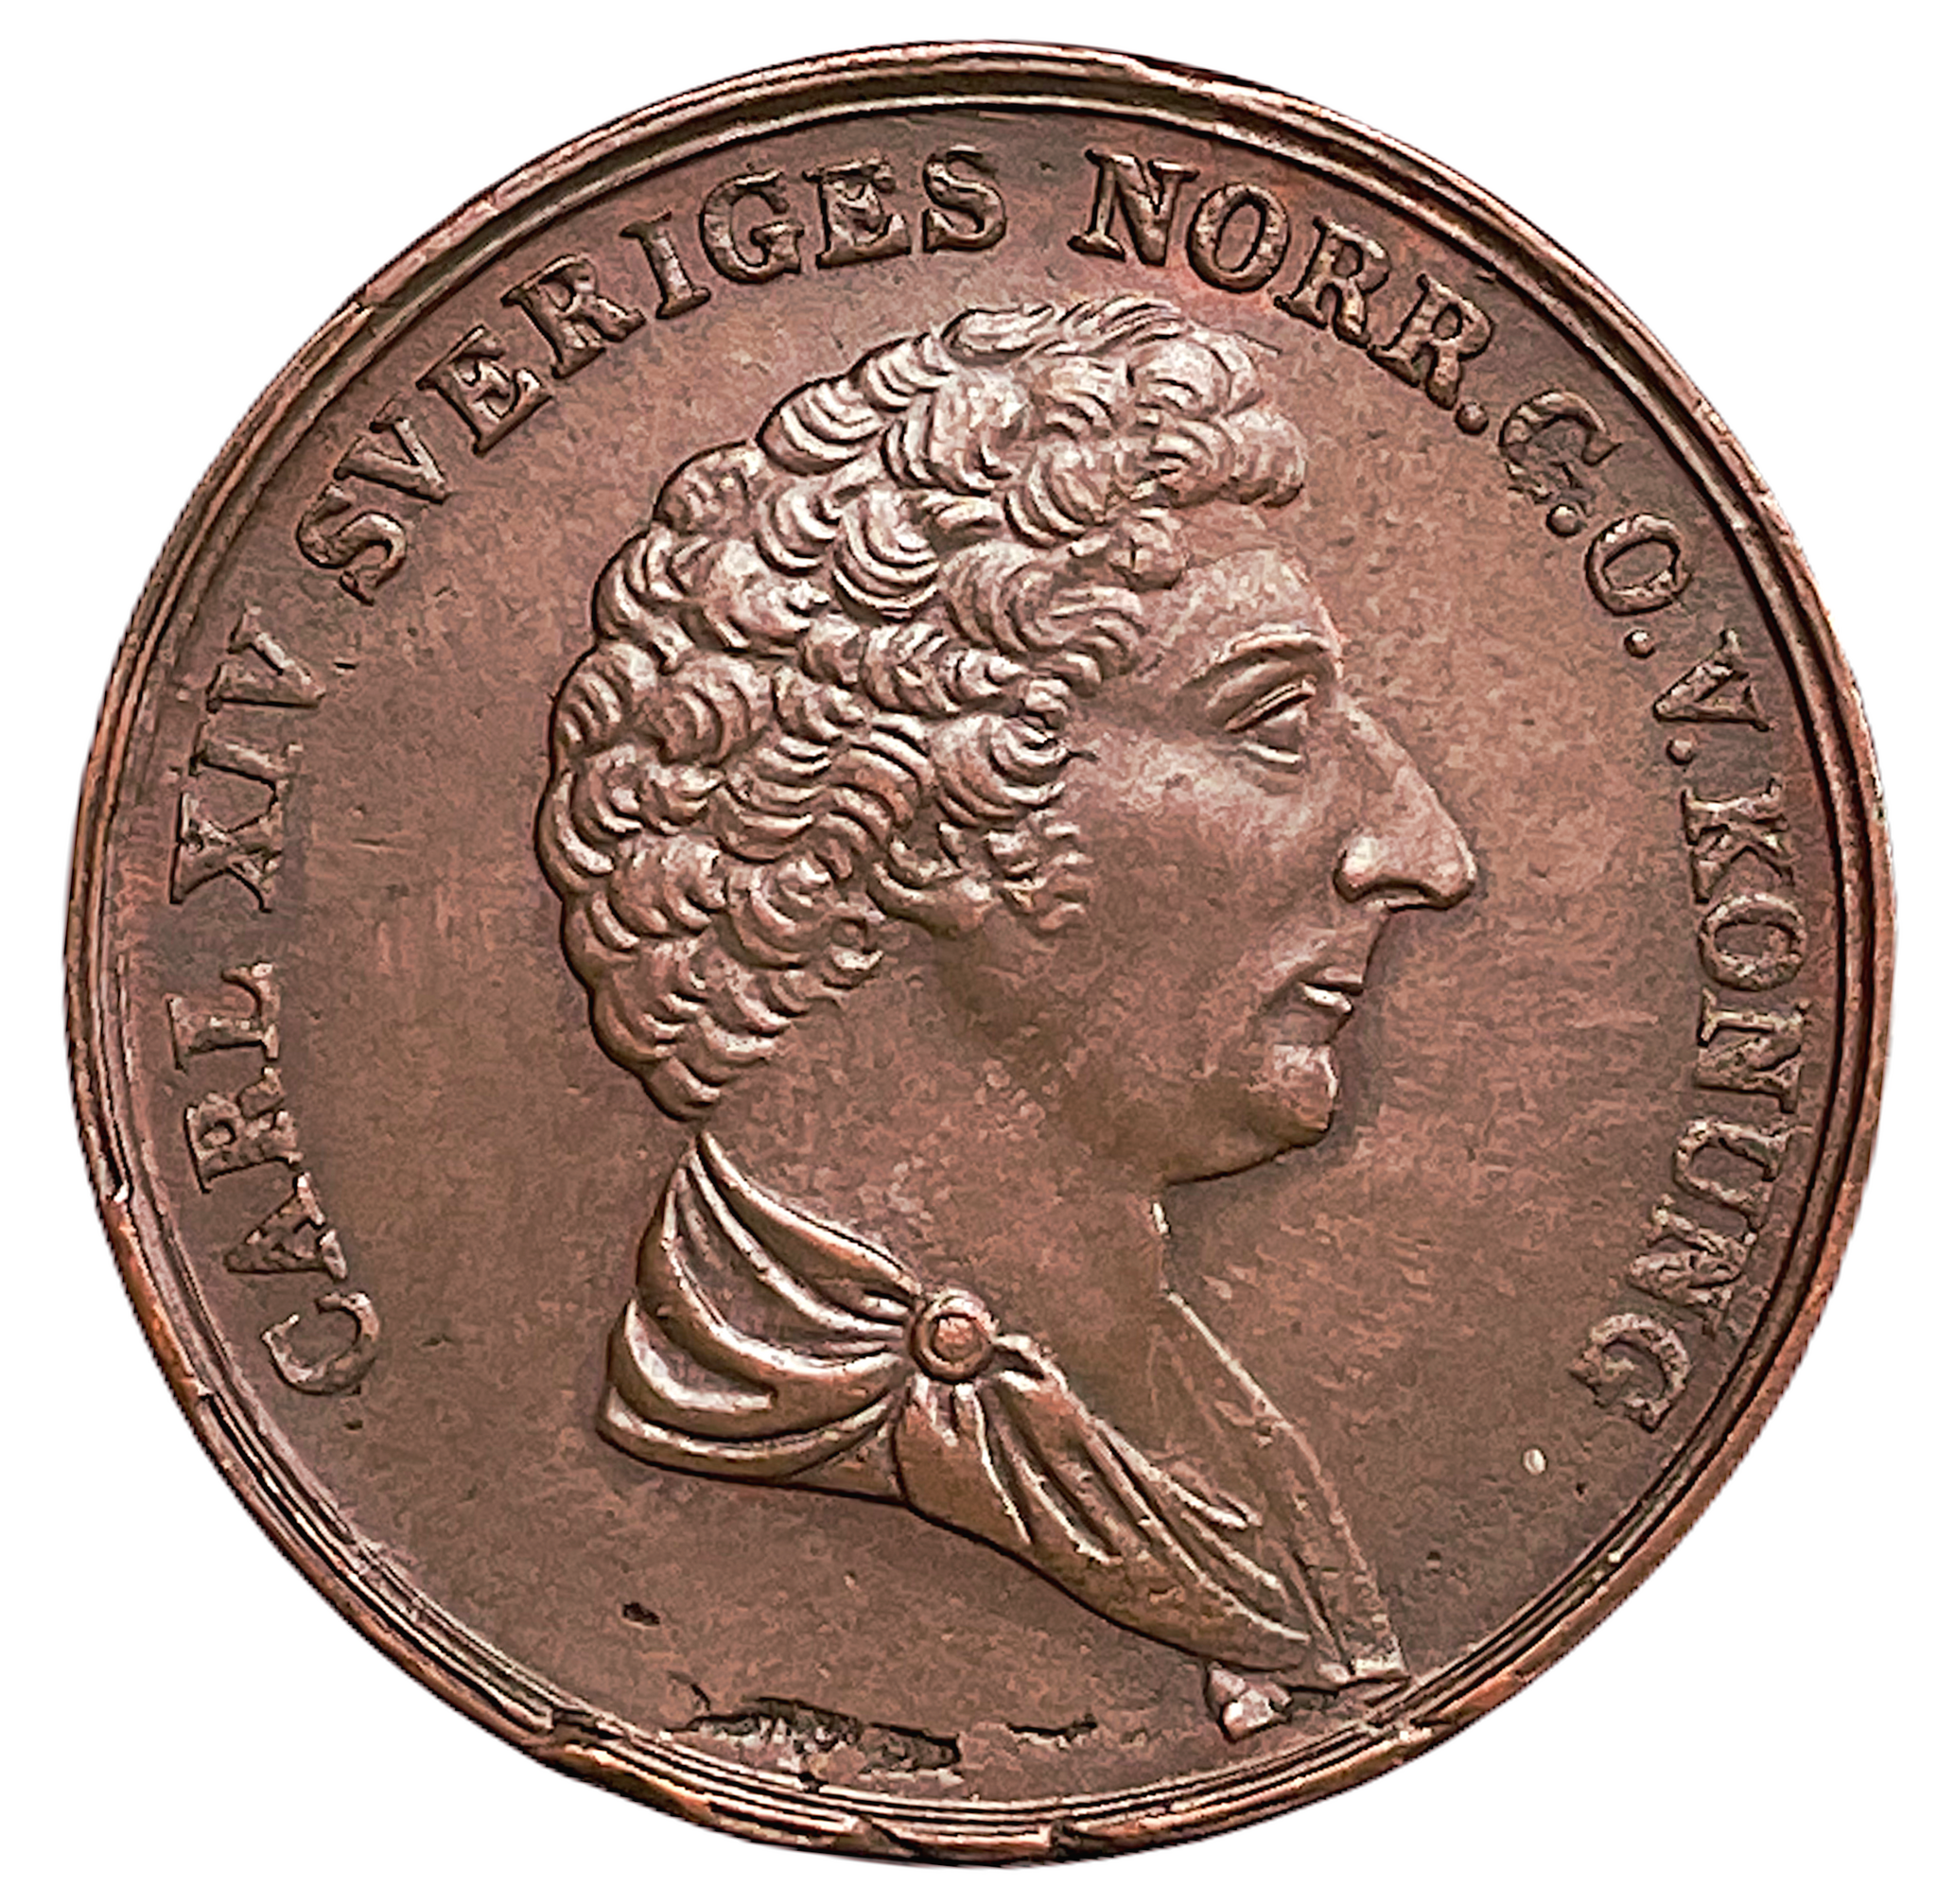 Karl XIV Johan - 2 Skilling Banco 1843 - Tilltalande exemplar